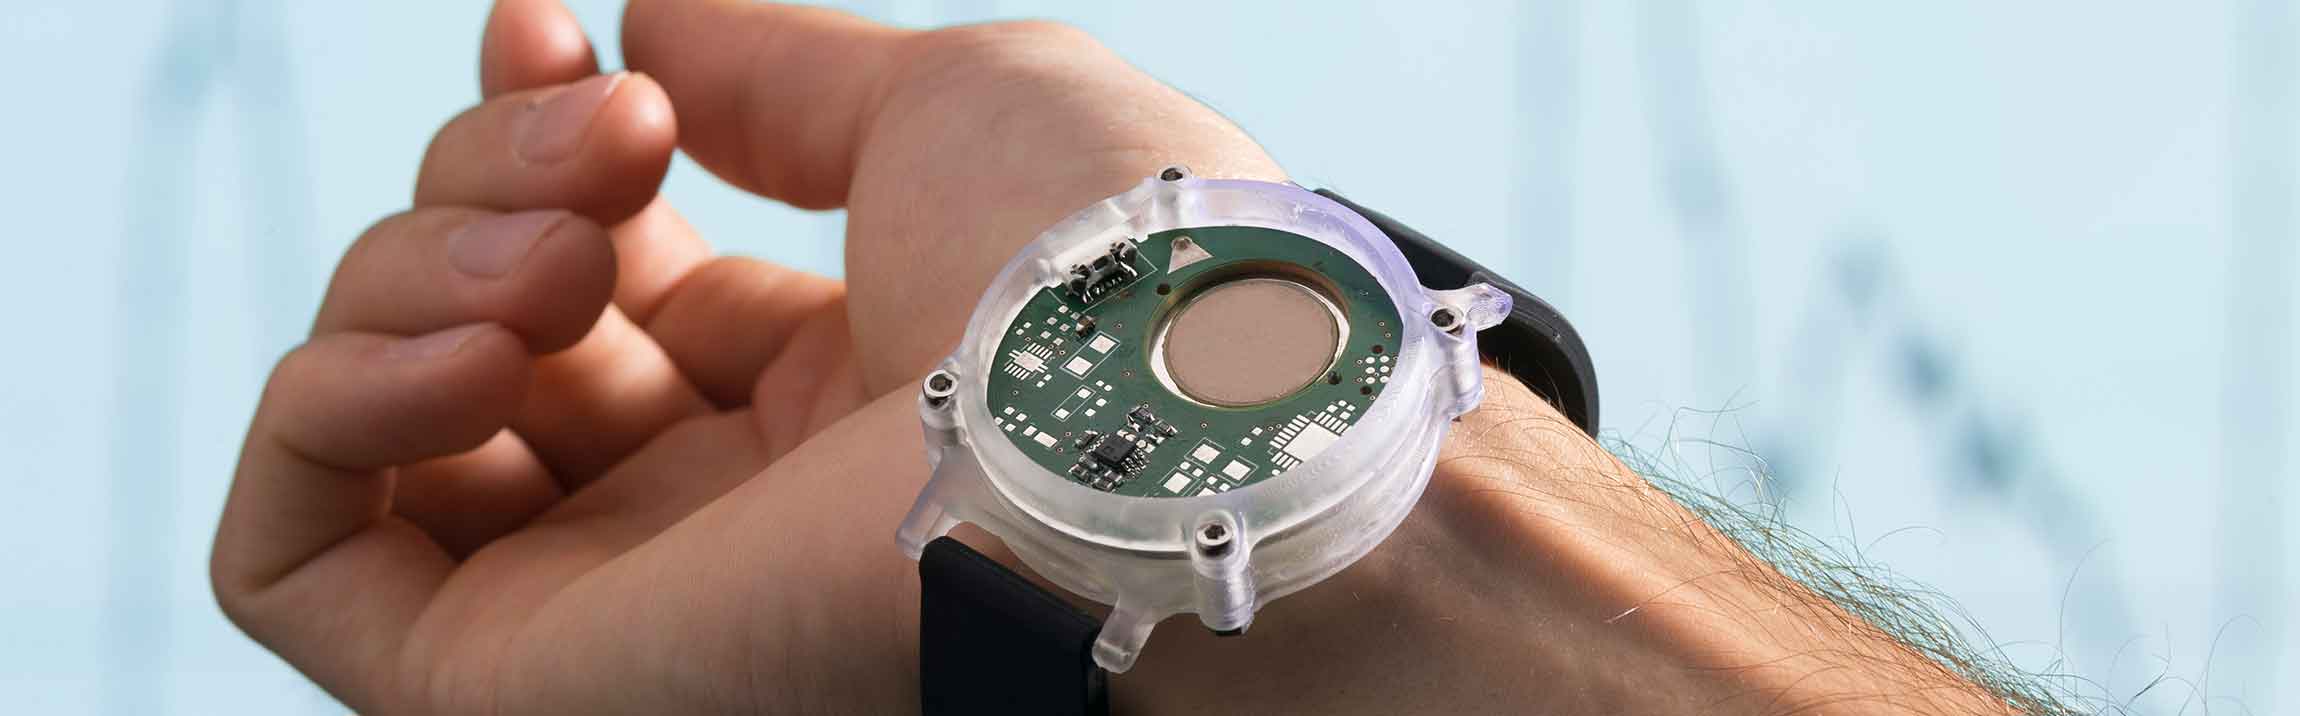 Armband als medizinisches Wearable: Die integrierte Mikropumpe zur Blutdruckmessung